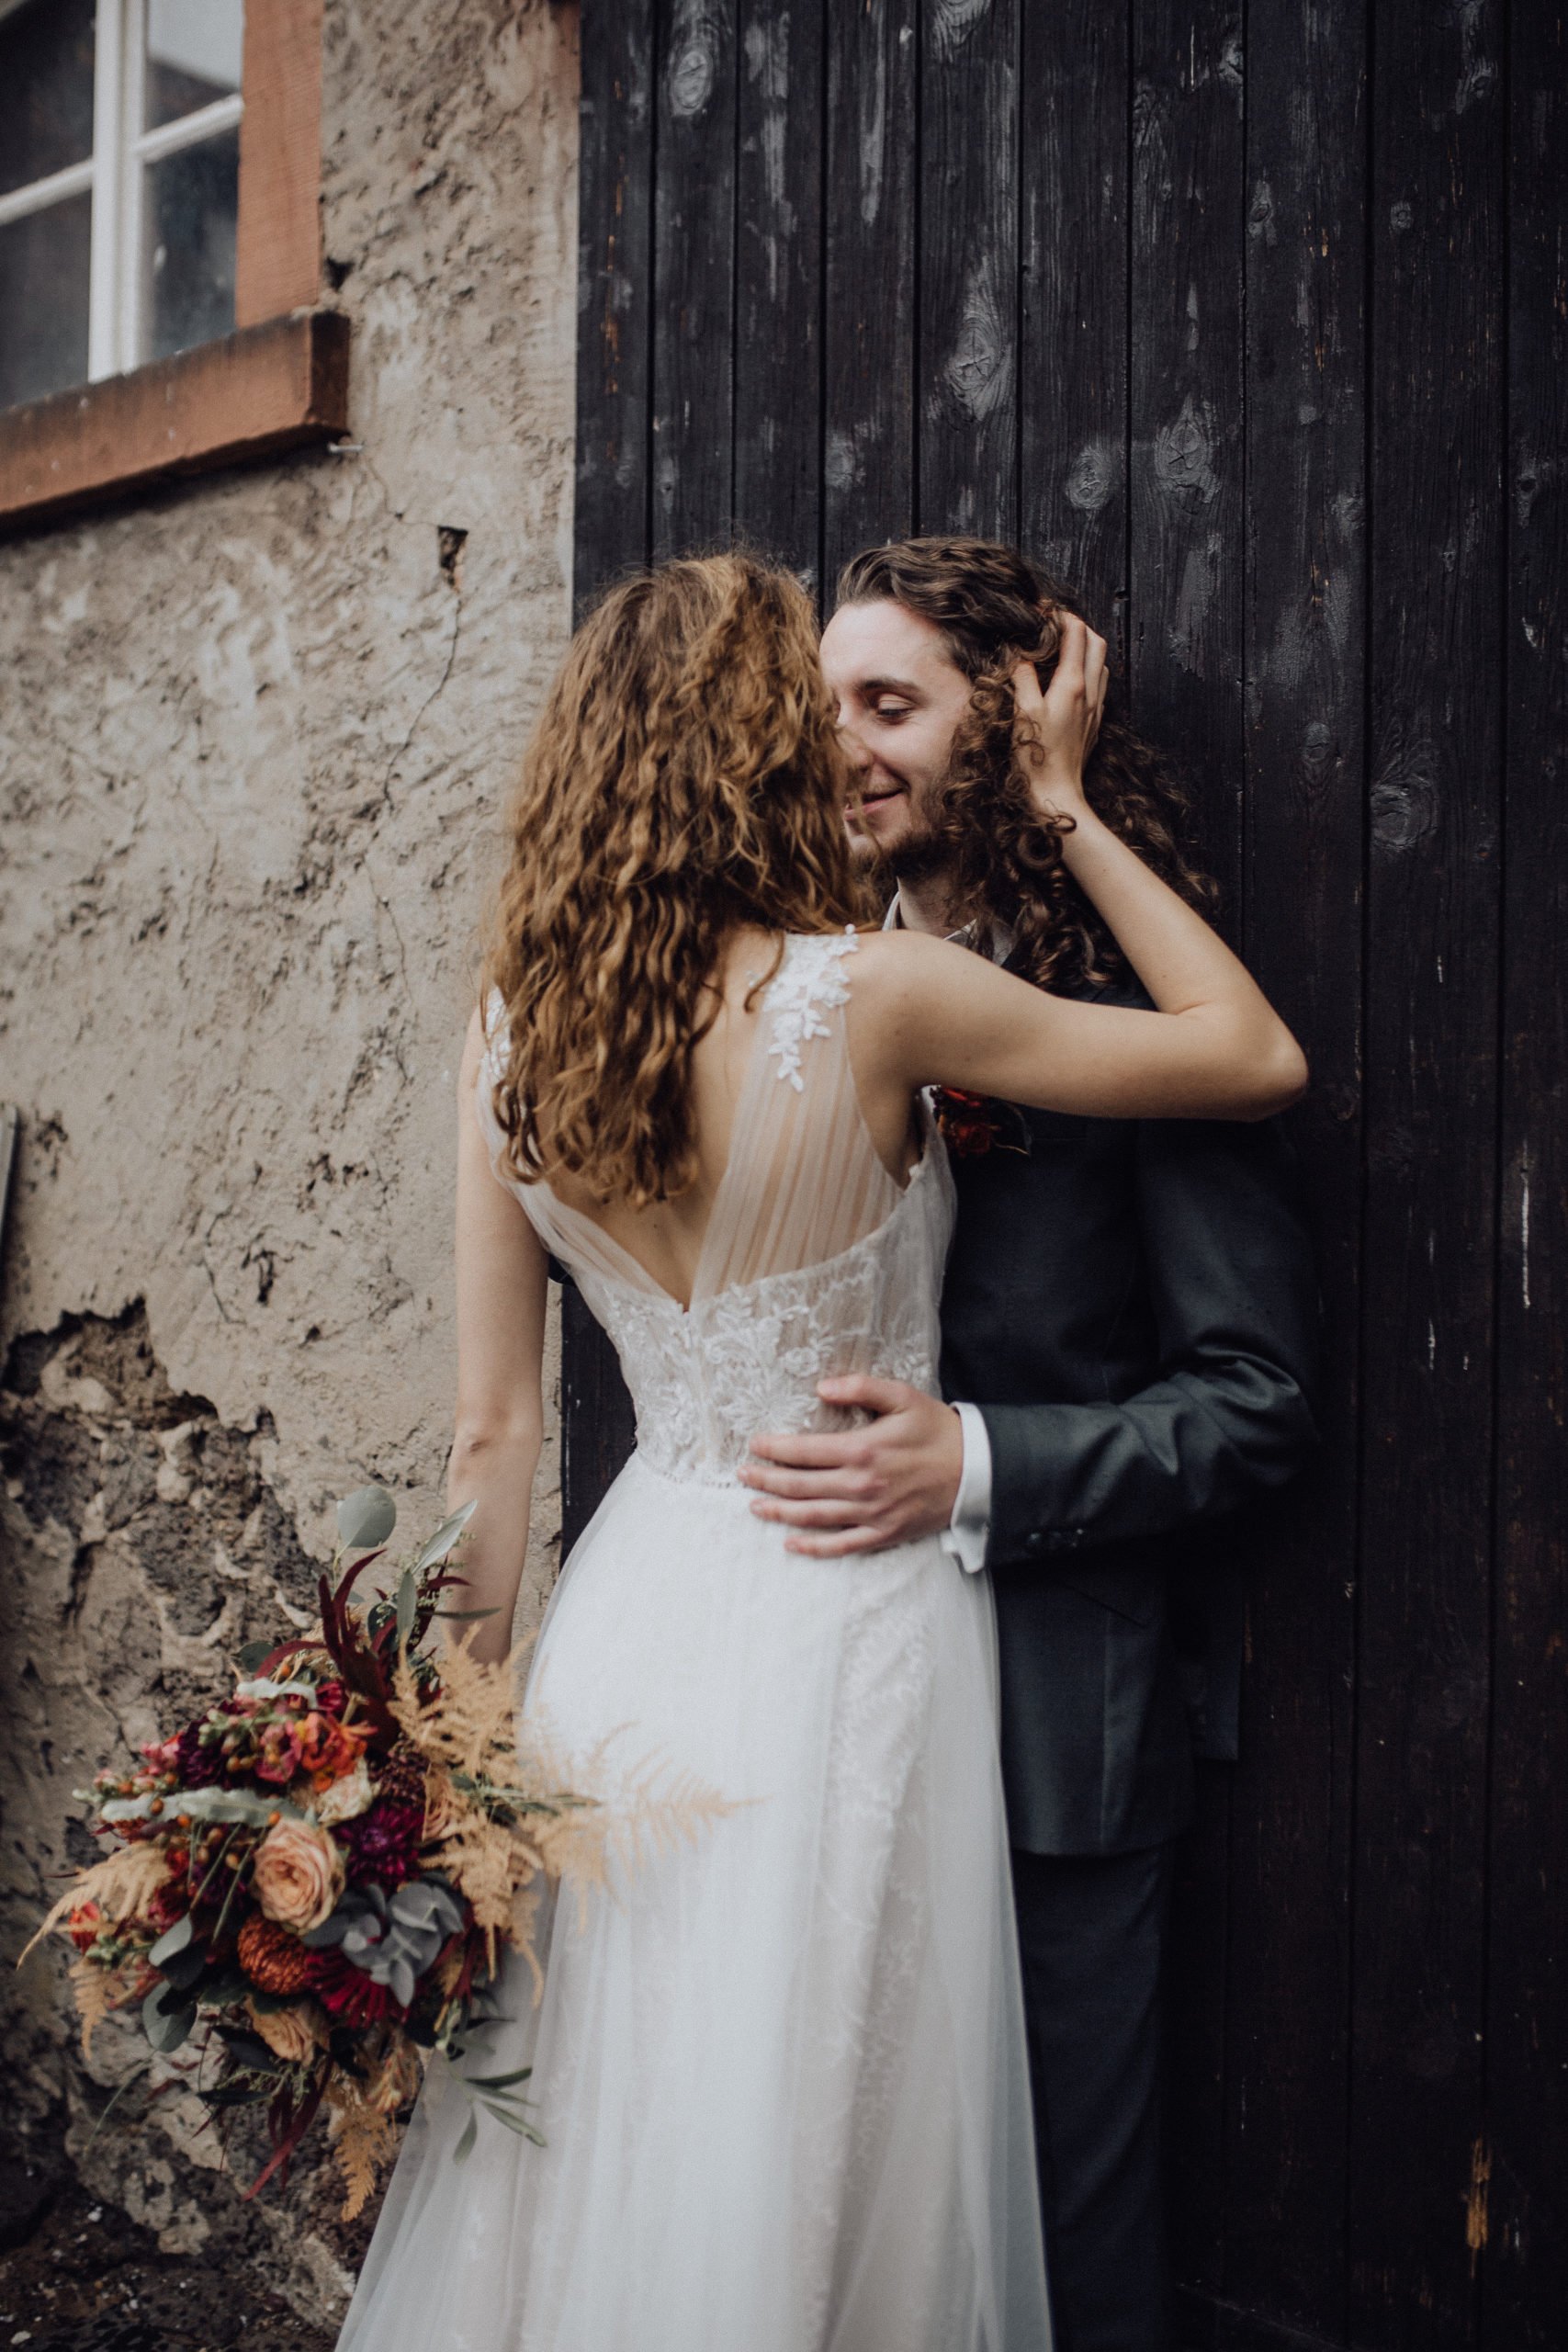 Braut und Bräutigam beim Paar-Fotoshooting